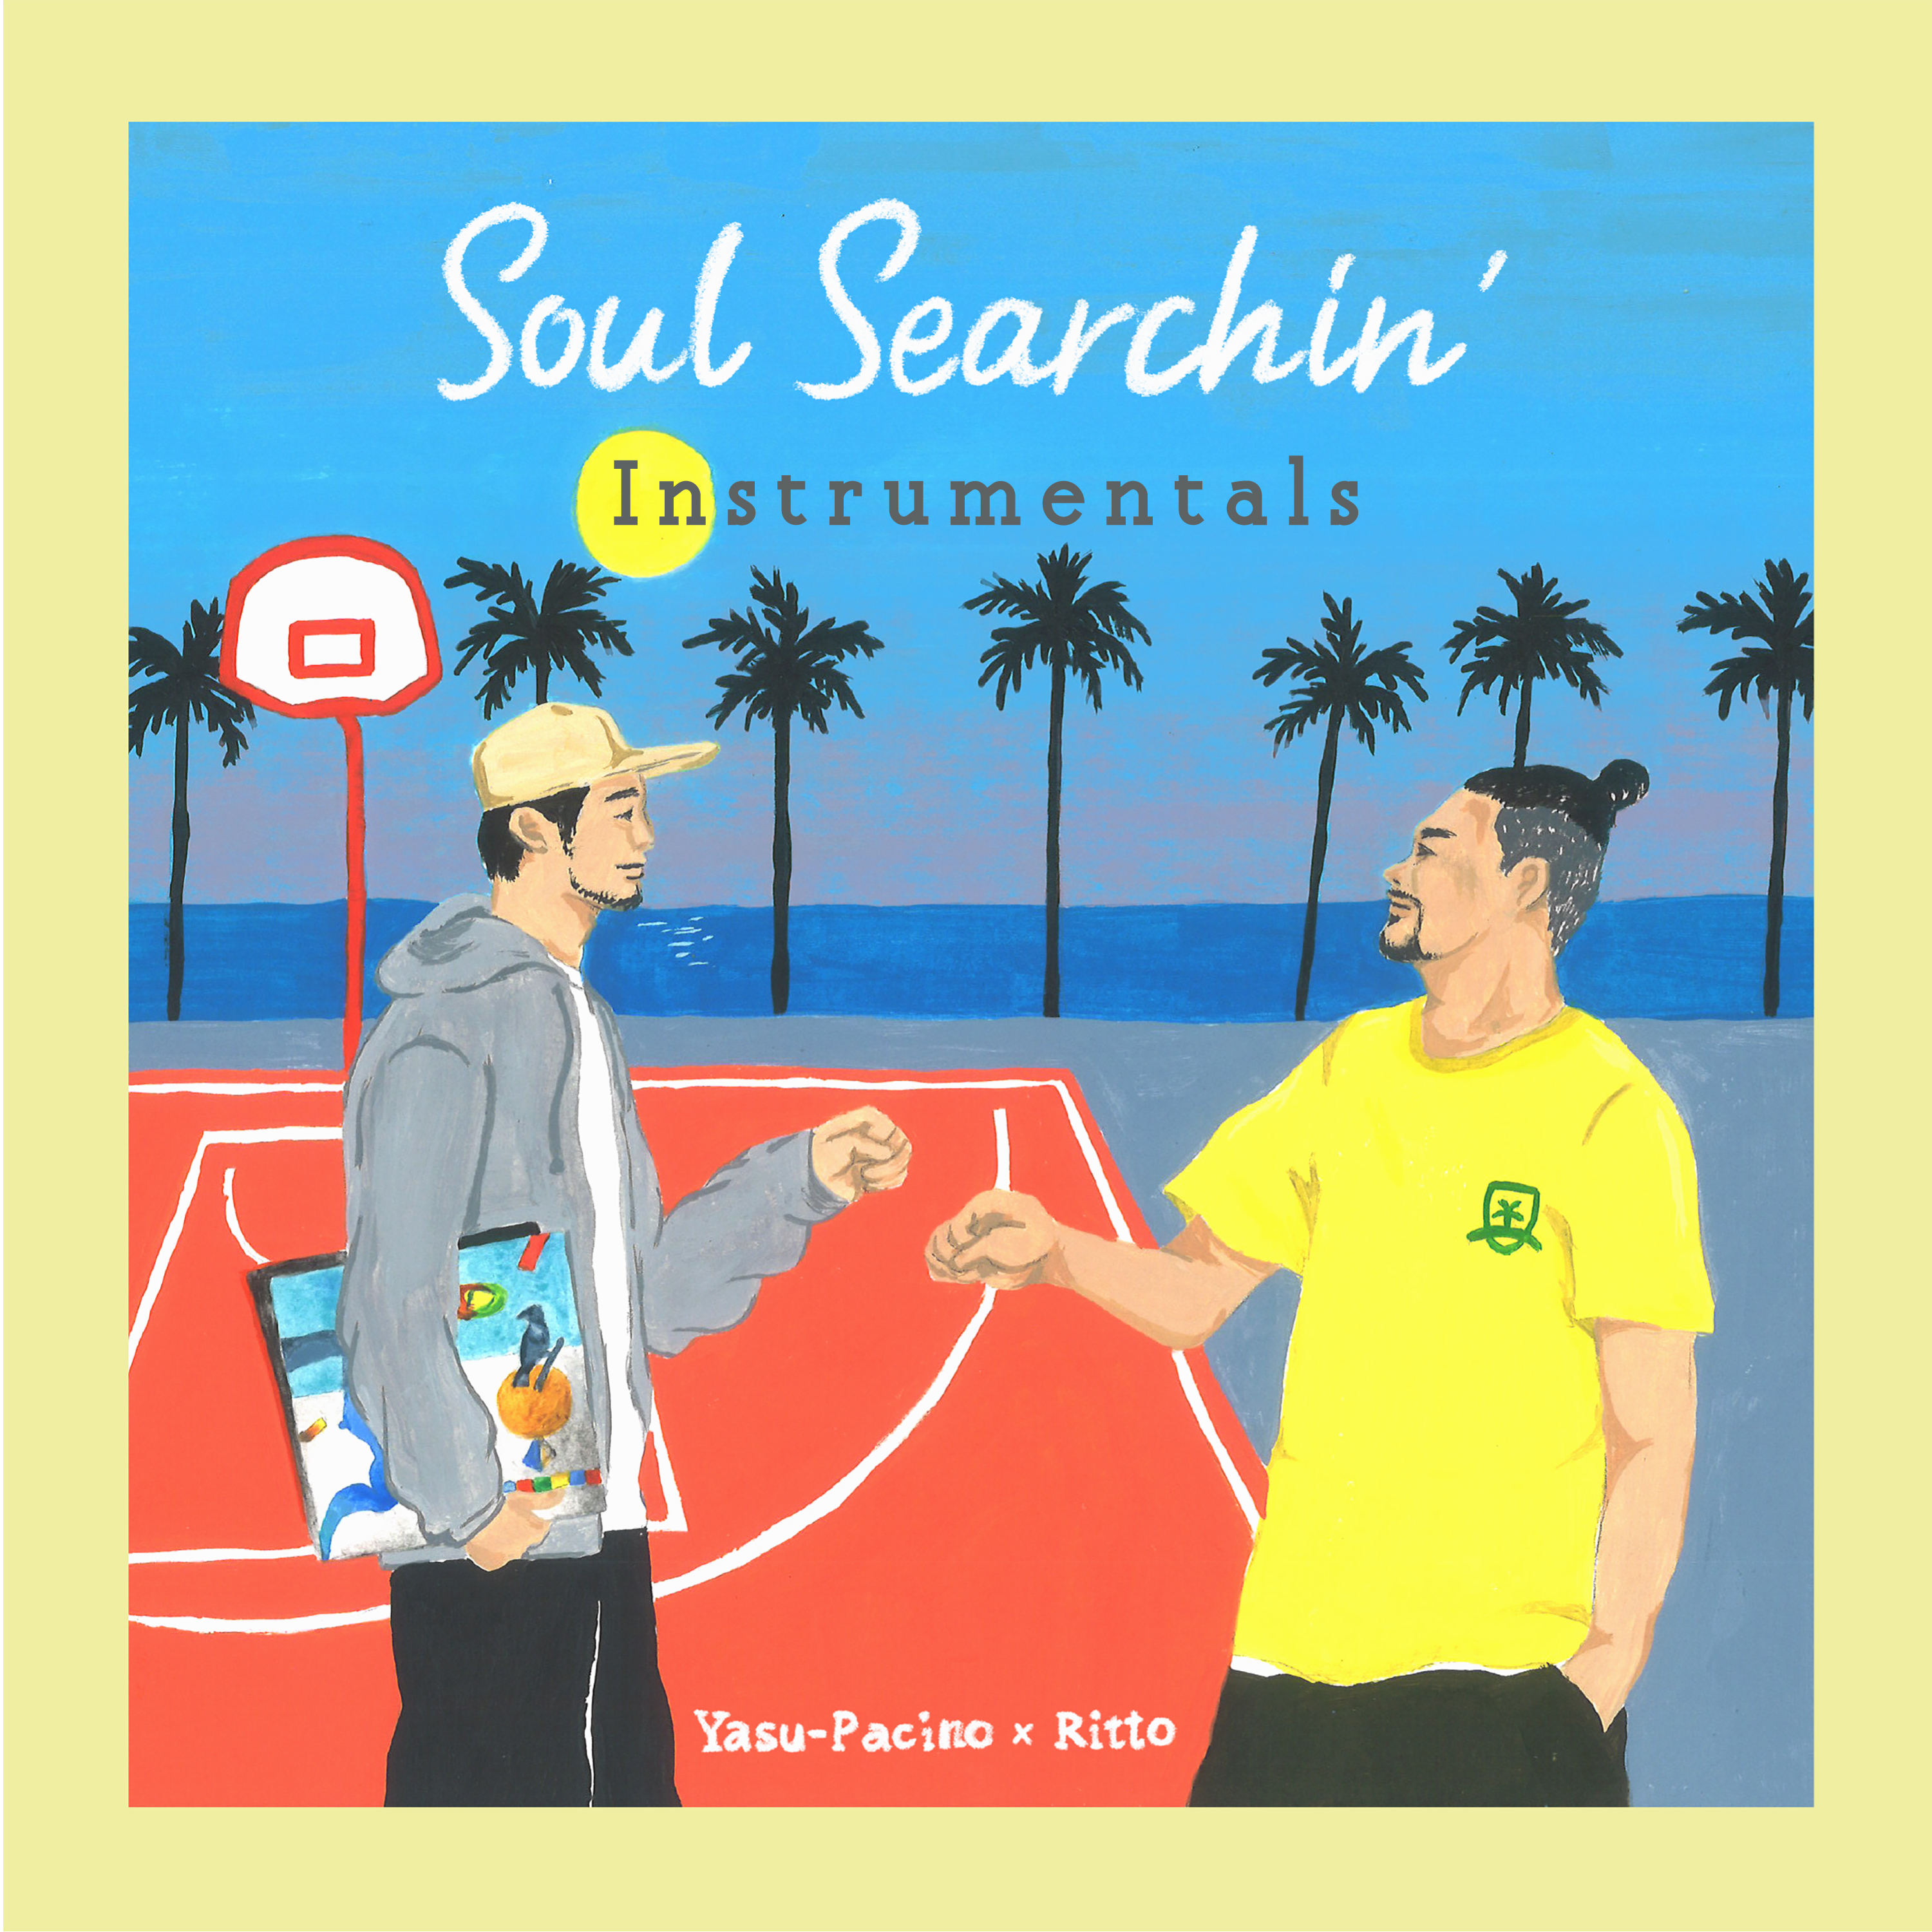 配信開始『Soul Searchin' Instrumentals』